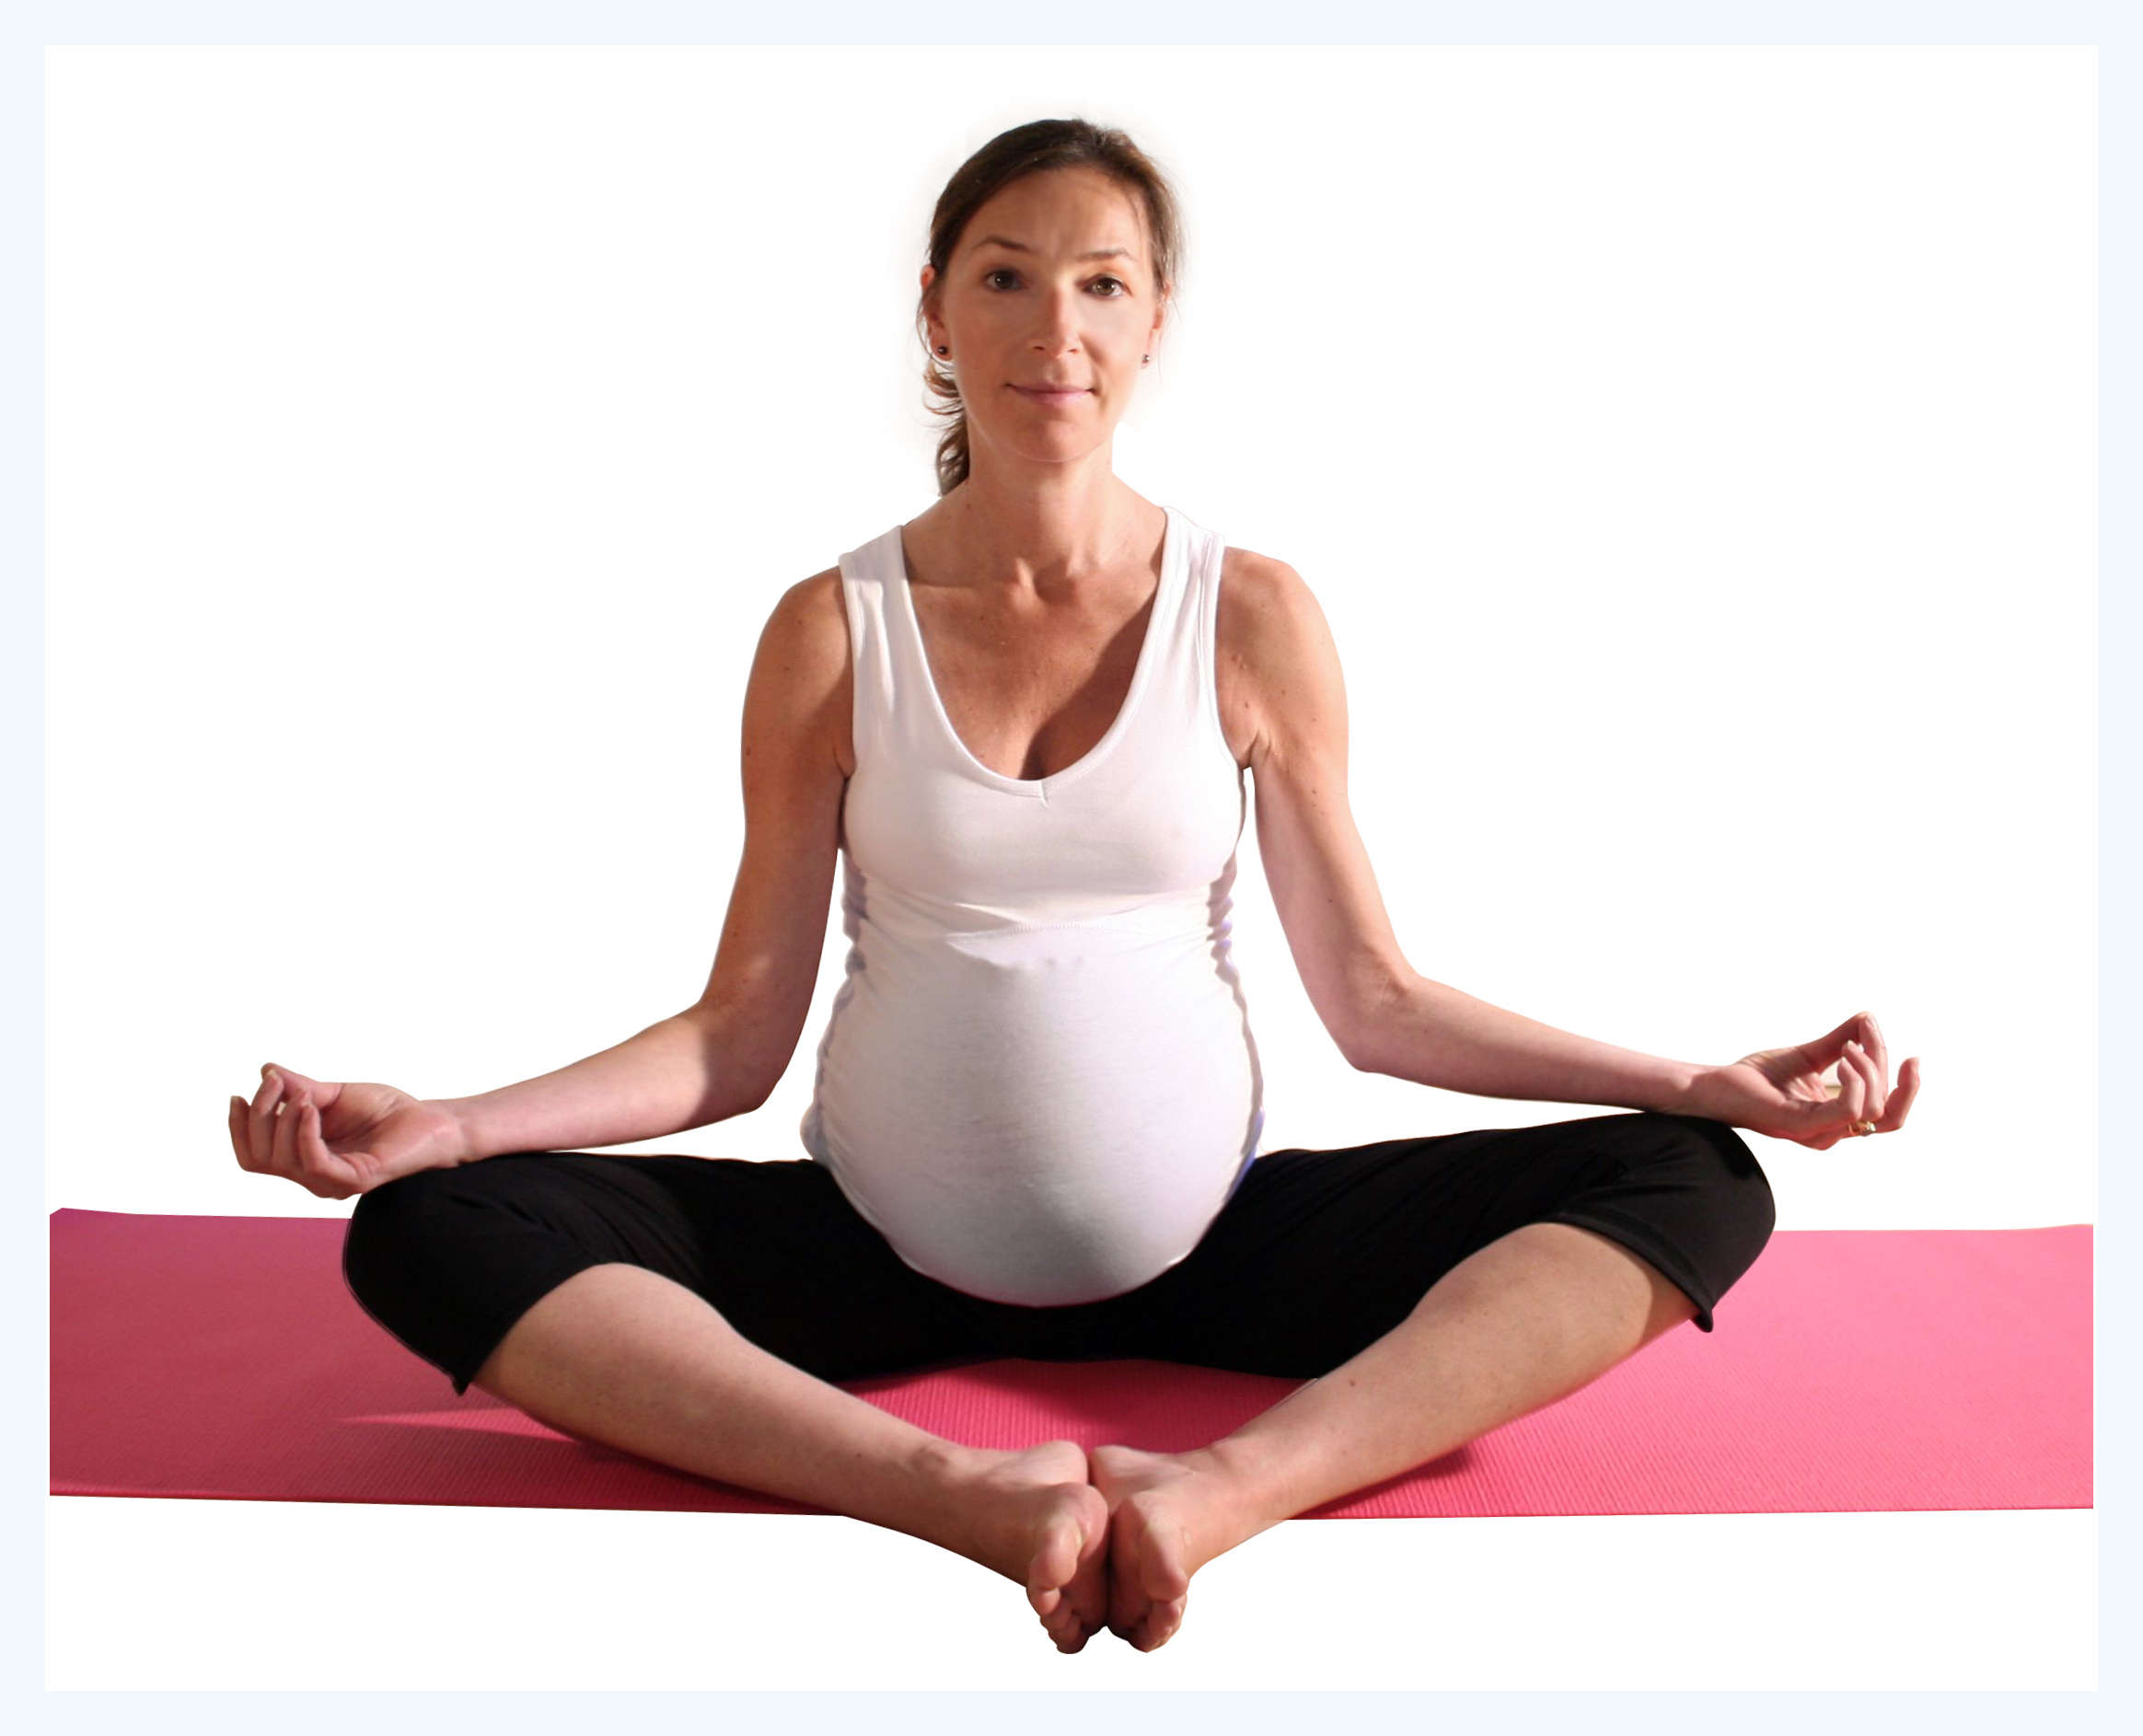 Йога для беременных: 1, 2, 3 триместр, видео, в домашних условиях, отзывы, польза и вред, противопоказания